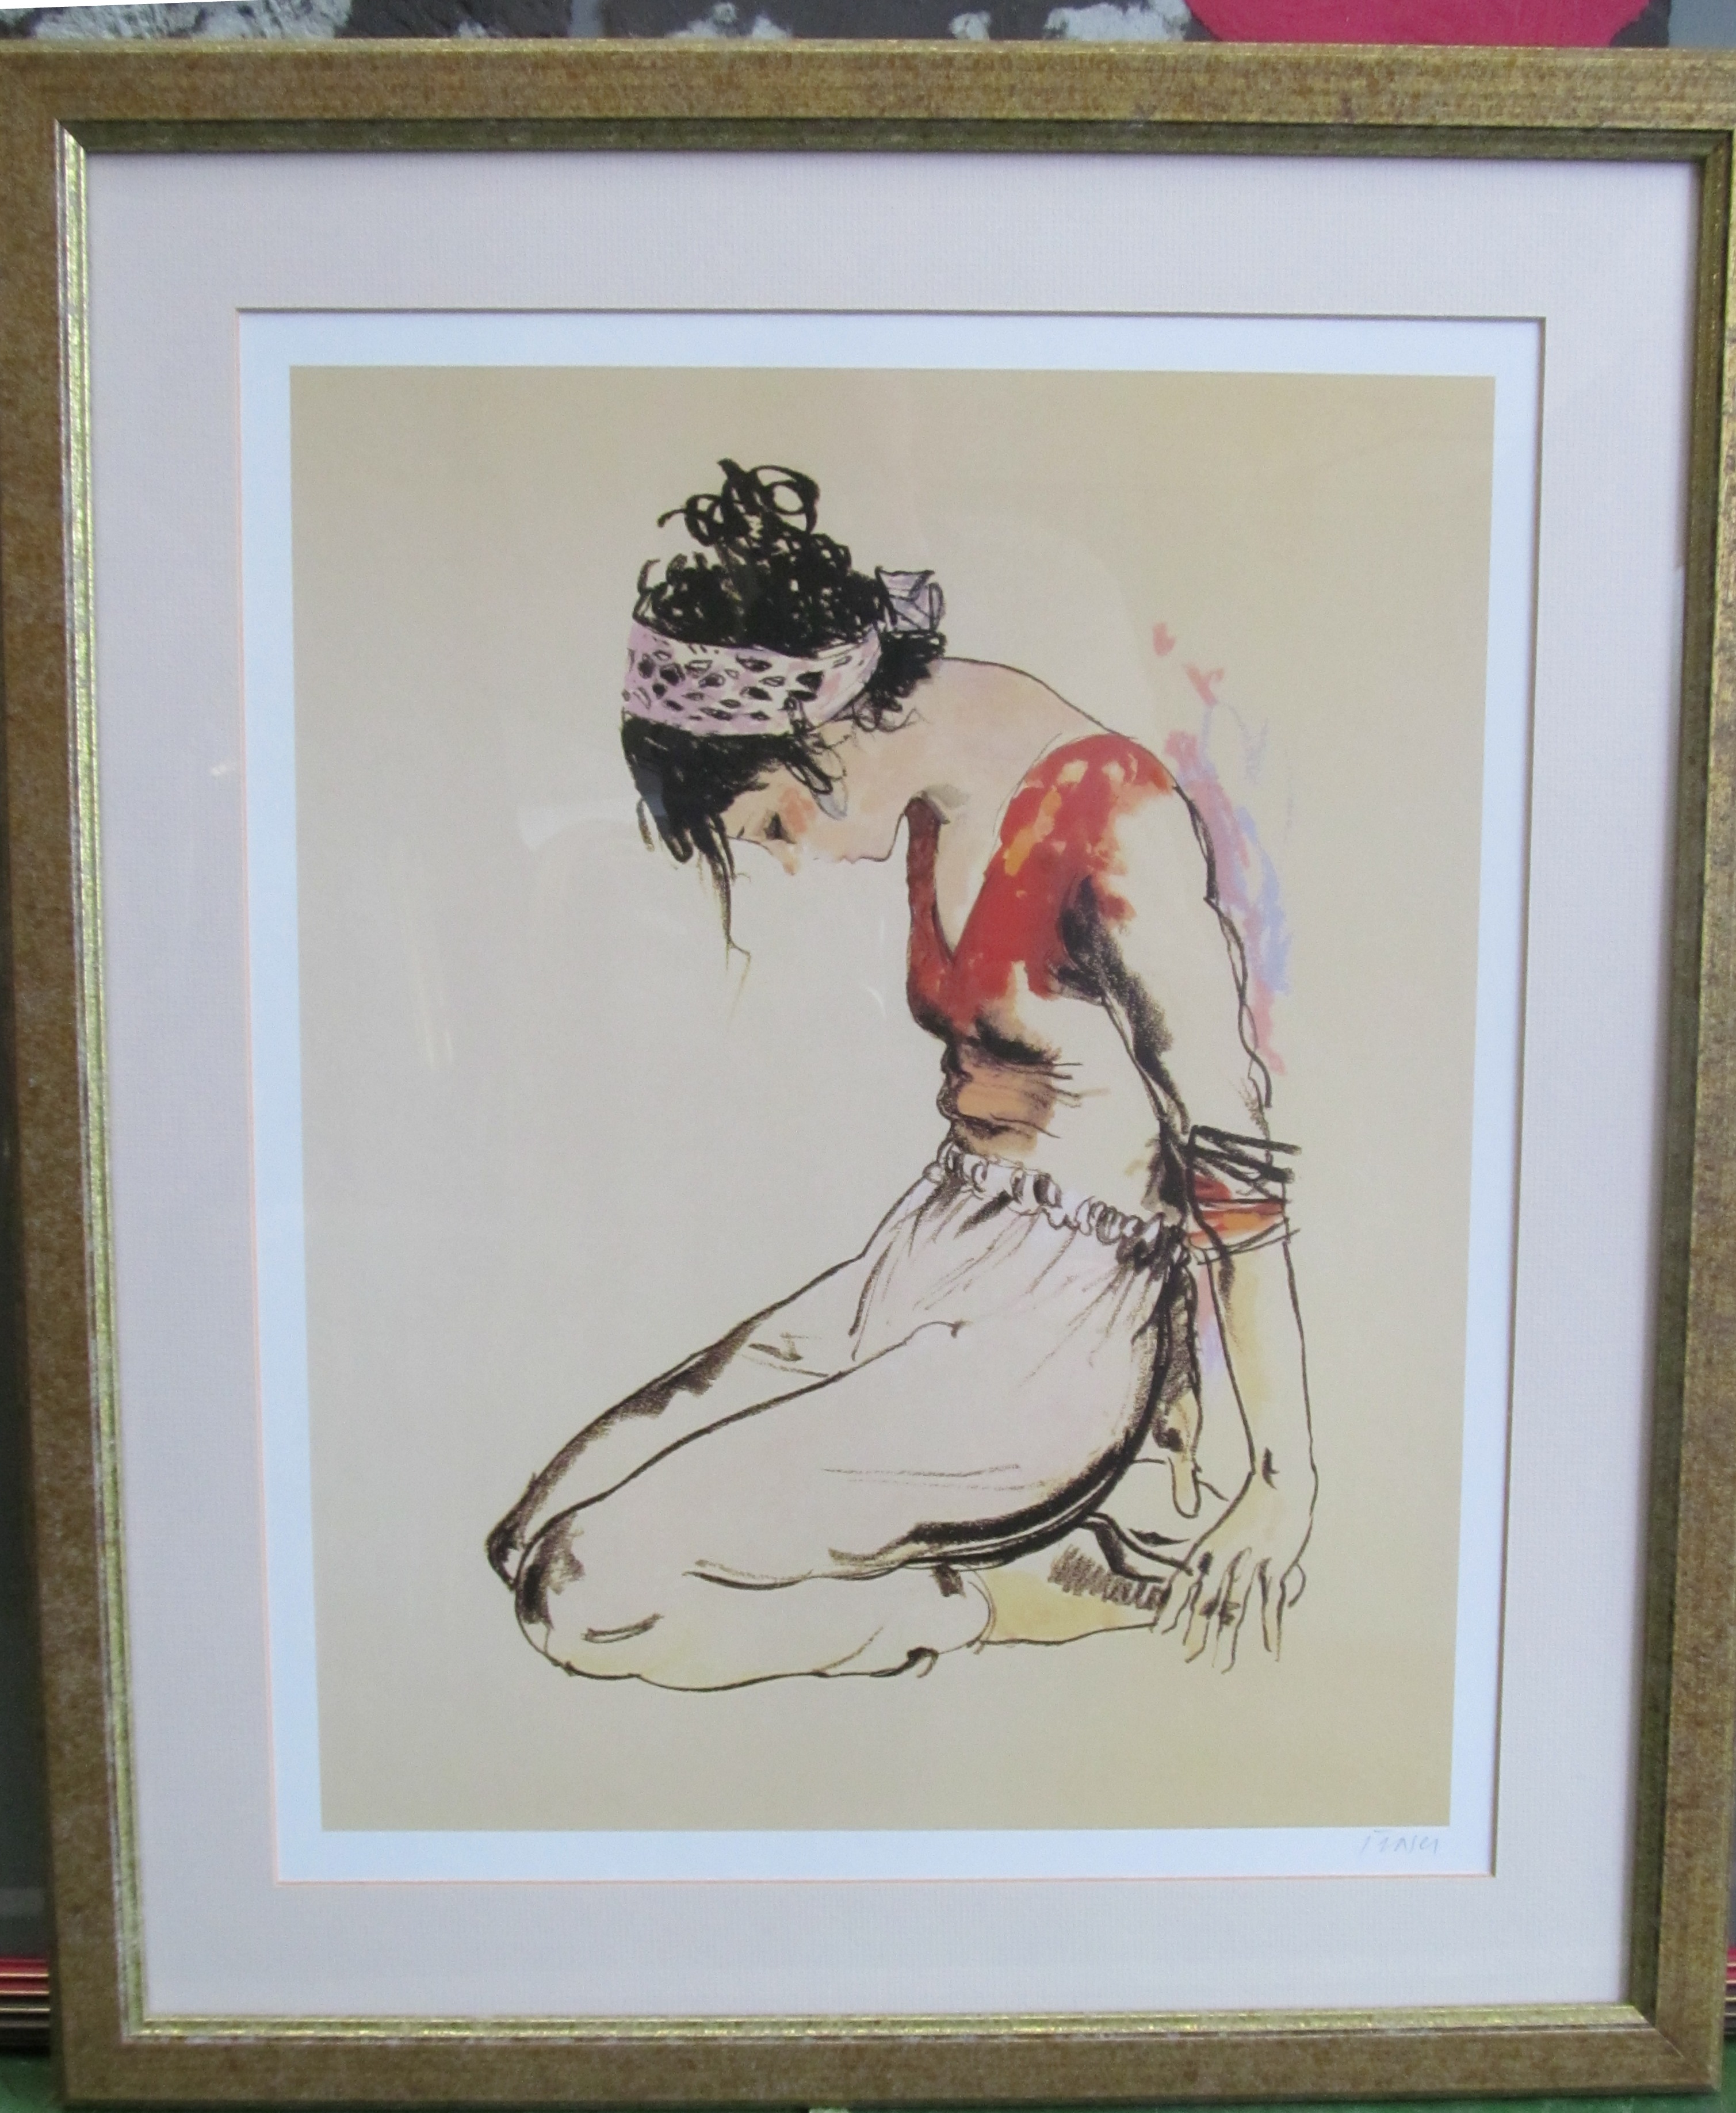 A print kneeling dancers